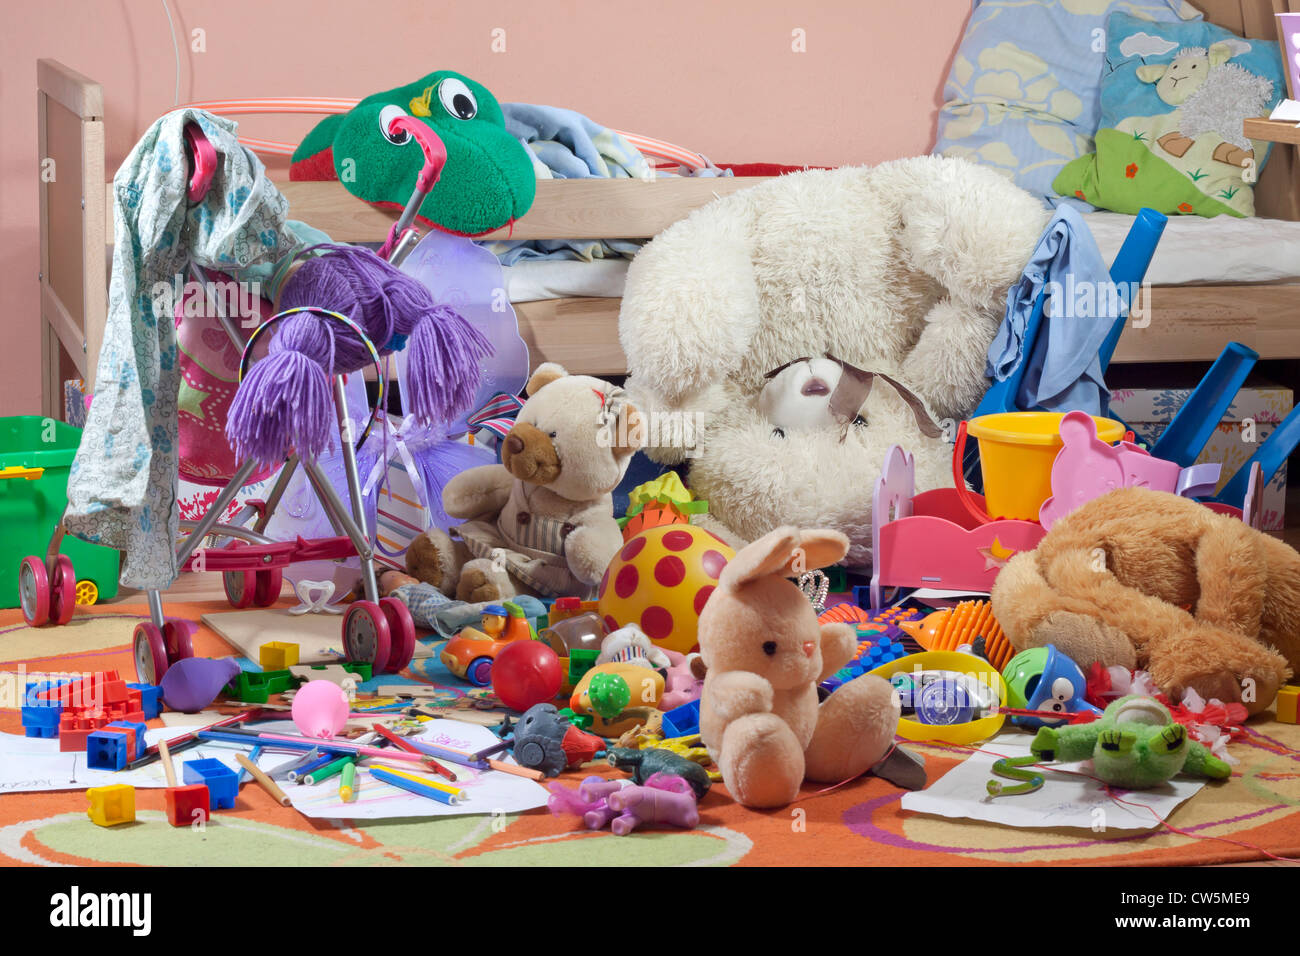 Unordentliche Kinderzimmer mit Spielzeug und anderes Zubehör  Stockfotografie - Alamy